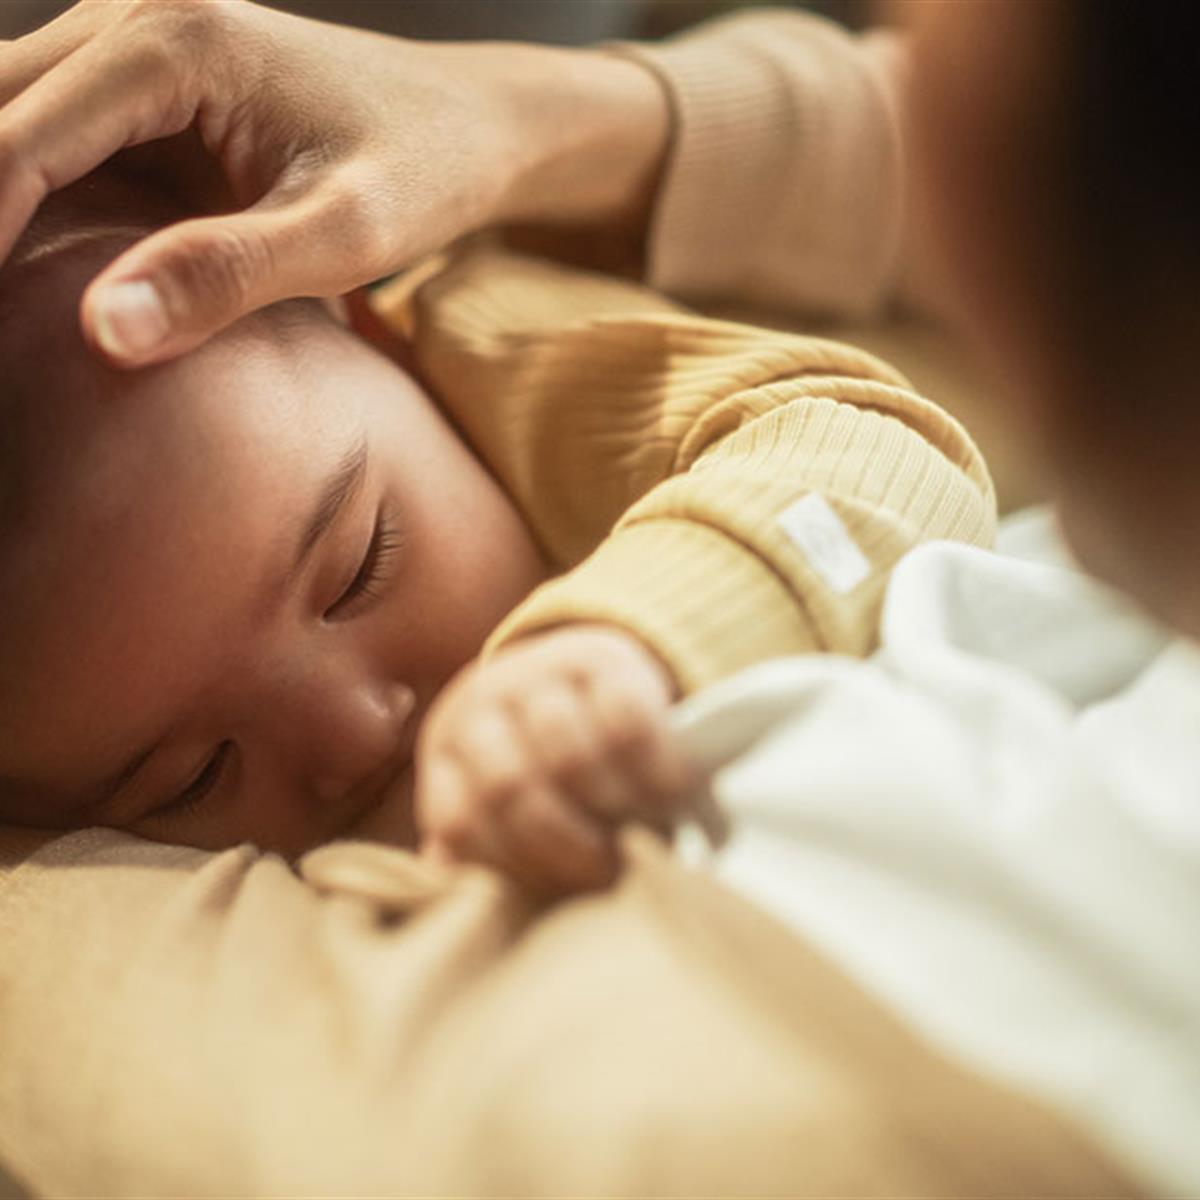 Breastfeeding to Sleep - Breastfeeding Support